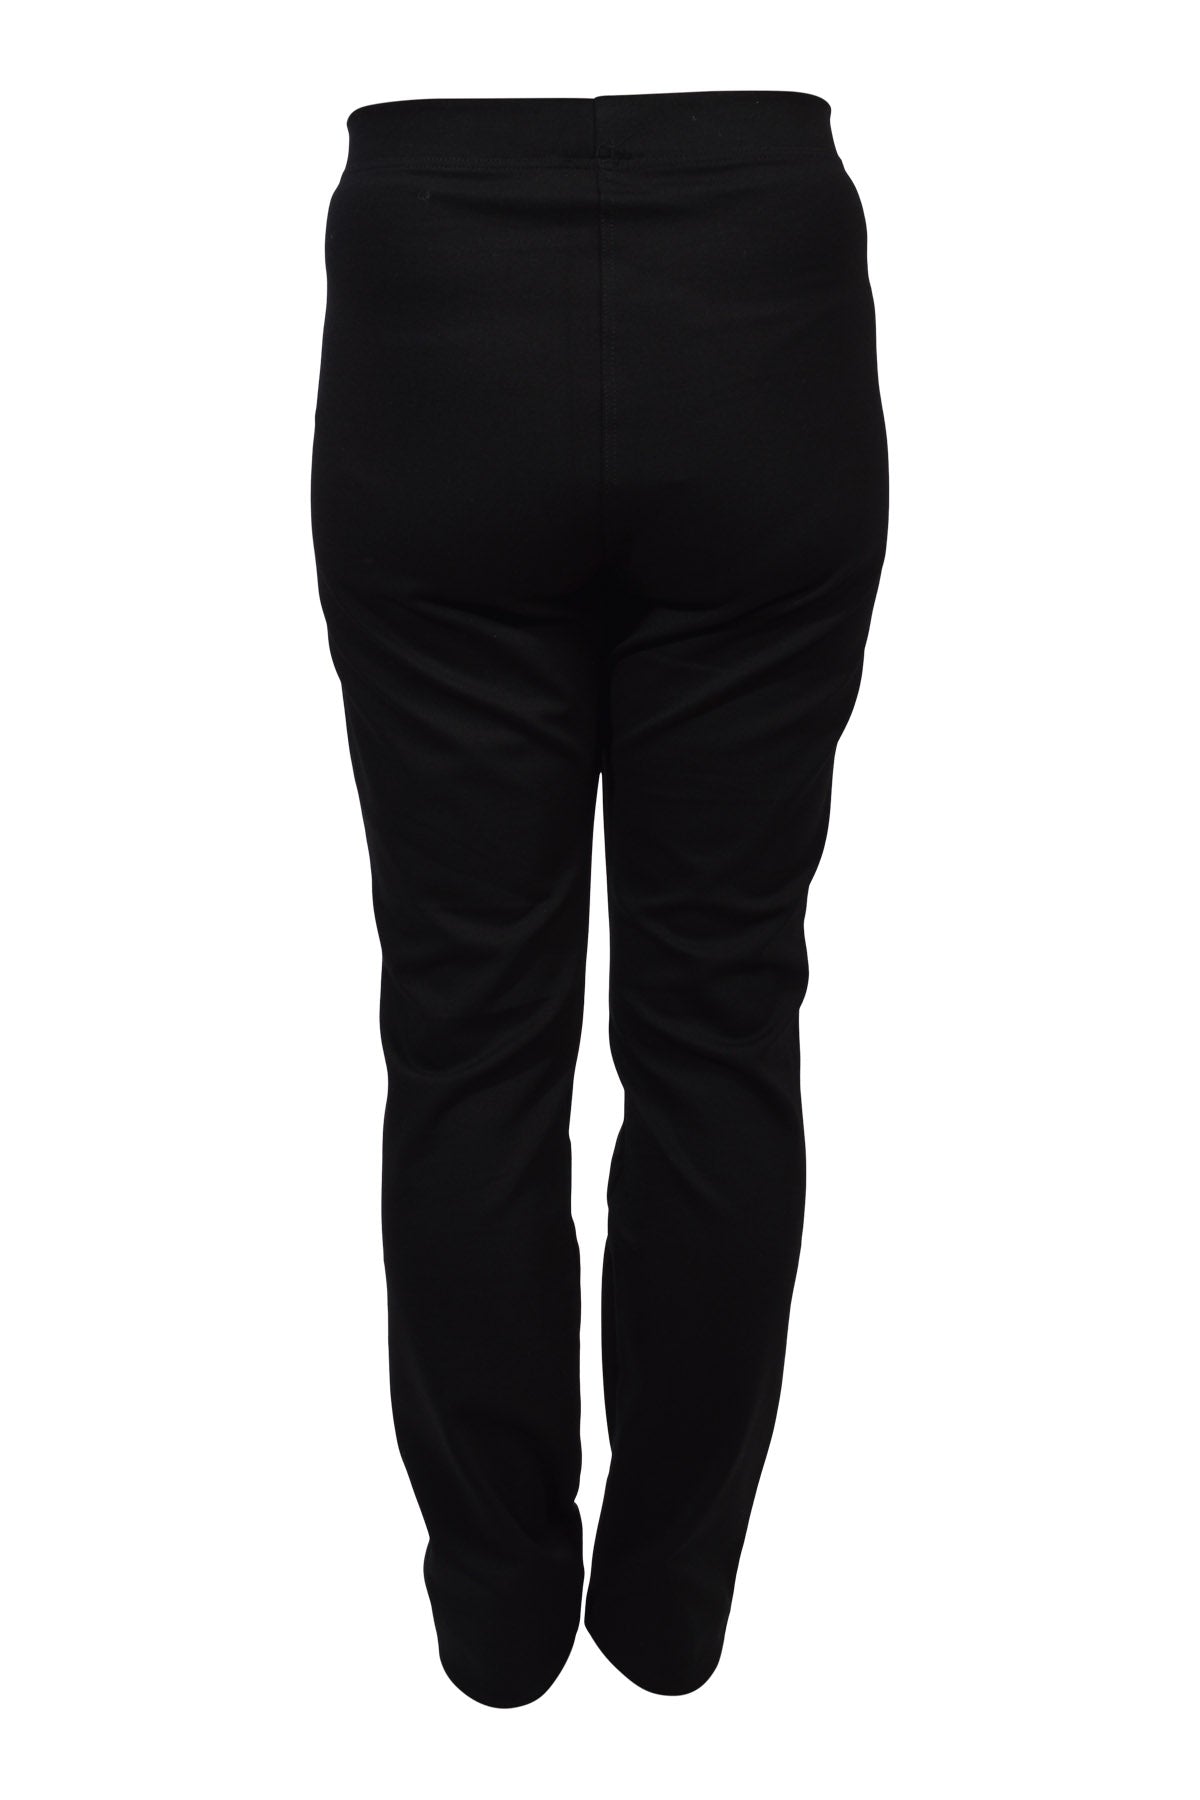 E Avantgarde Pants w/zipperband 14014, Black